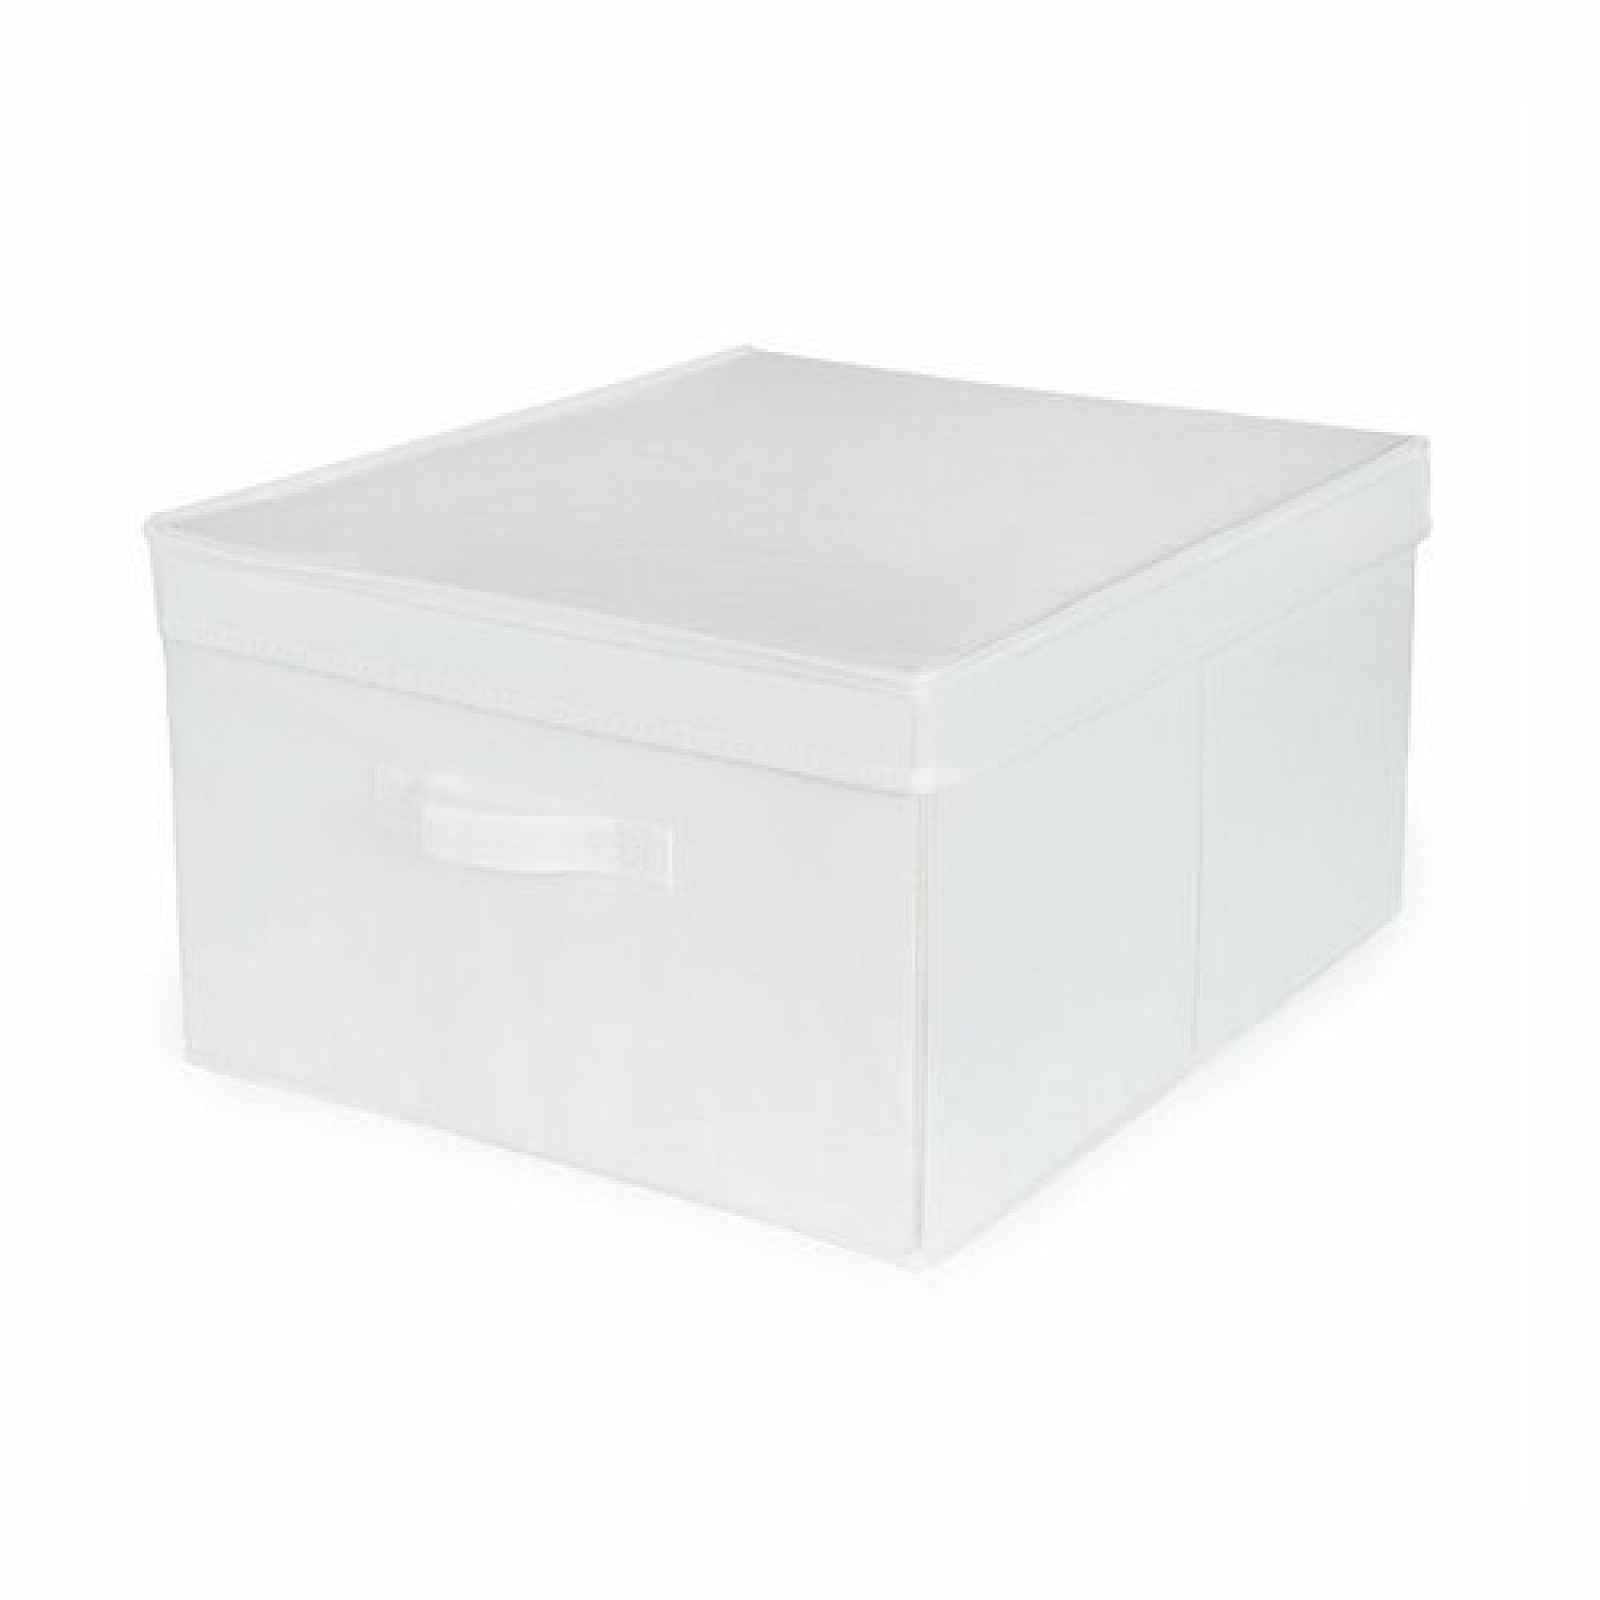 Compactor Skládací úložná kartonová krabice Wos, 40 x 50 x 25 cm, bílá